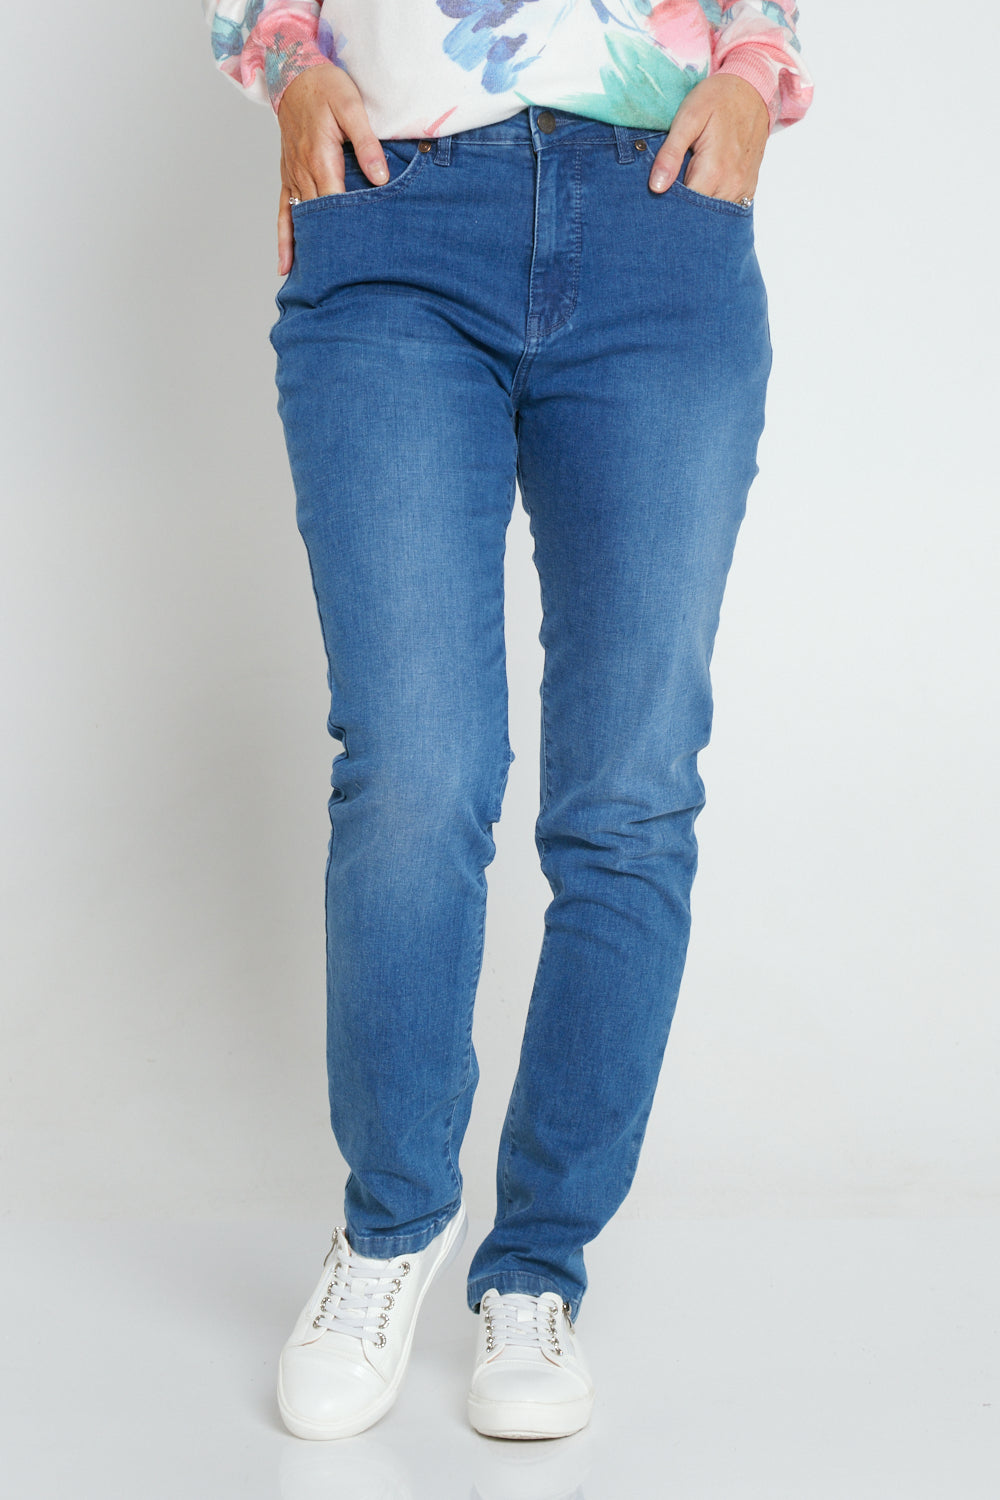 Orientique Straight Leg Jeans - Washed Denim